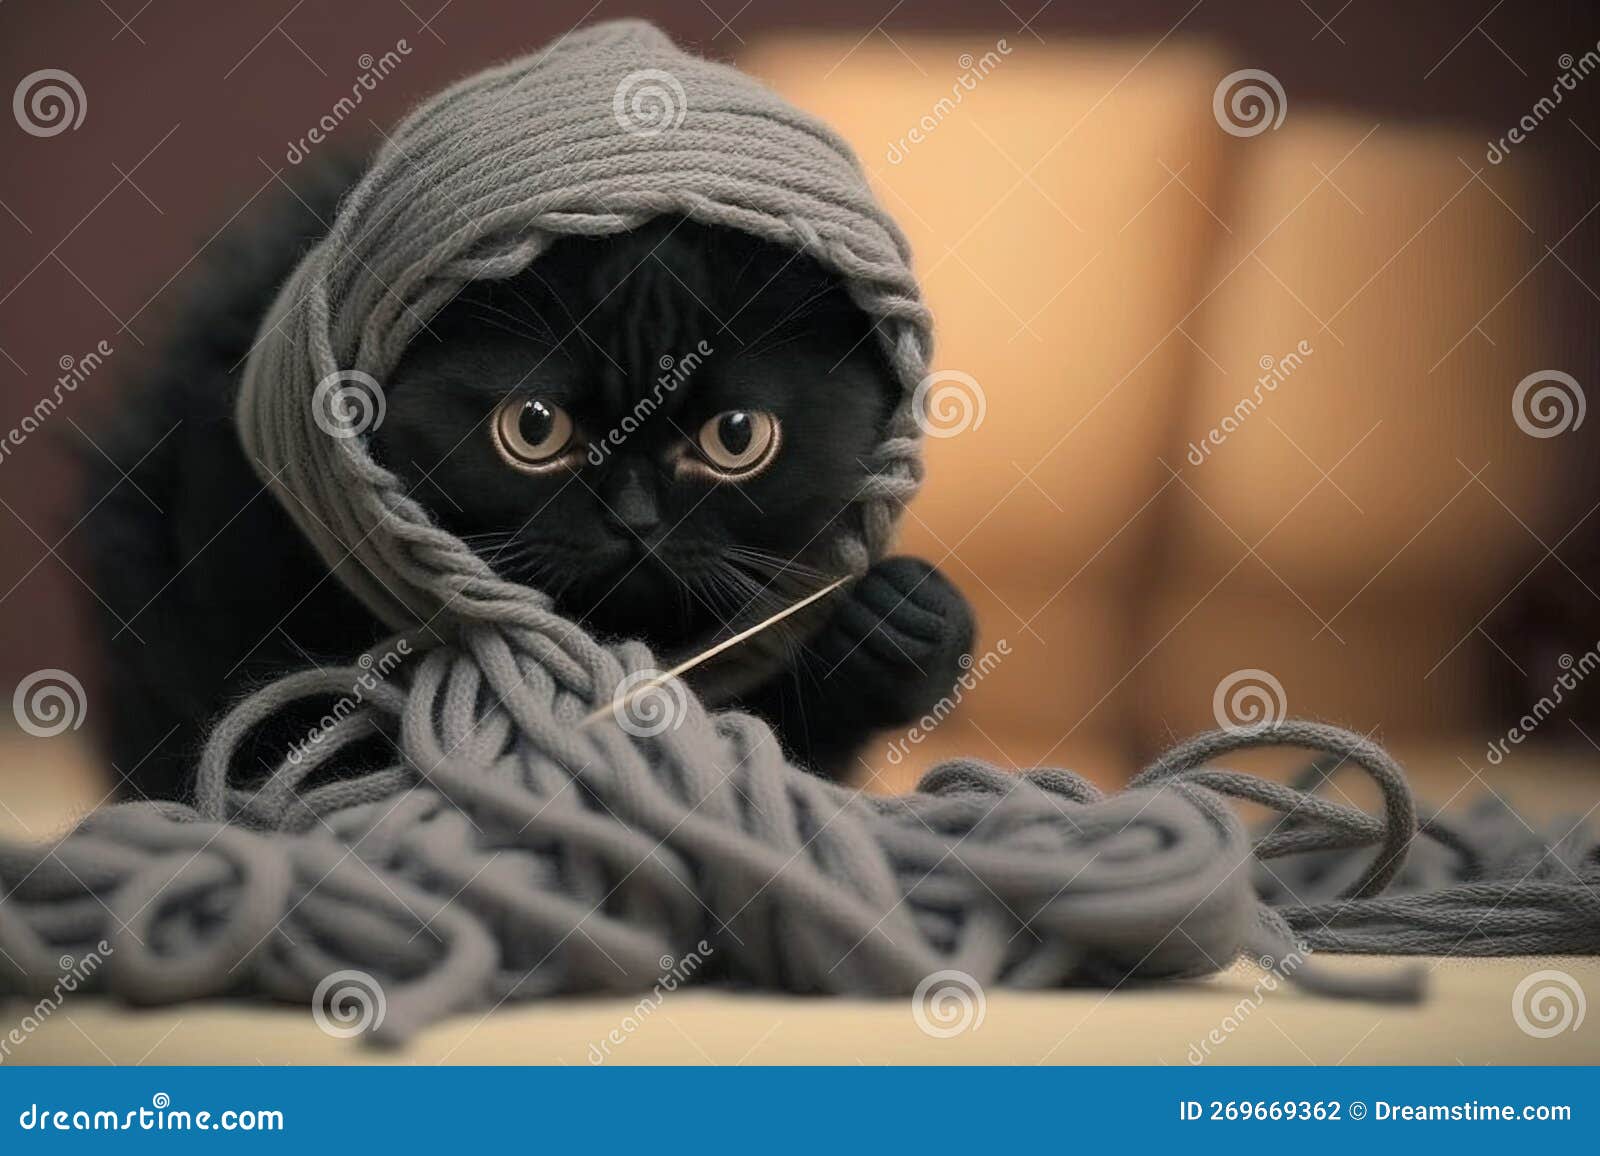 Gato ninja olhos azuis vestido preto